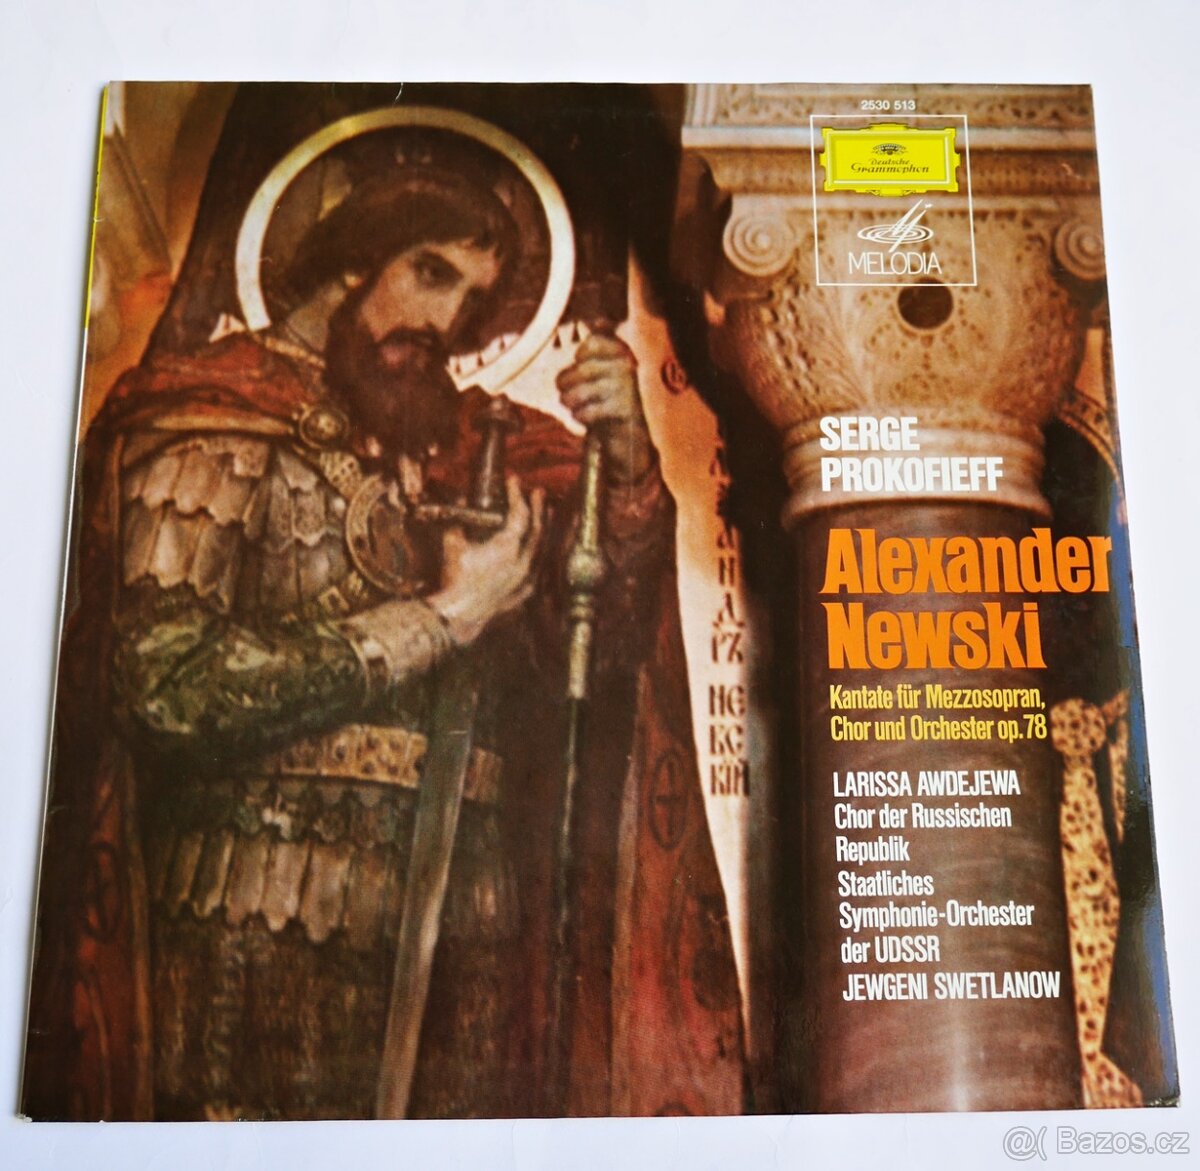 Serge Prokofieff - Alexander Newski (LP, 1974)